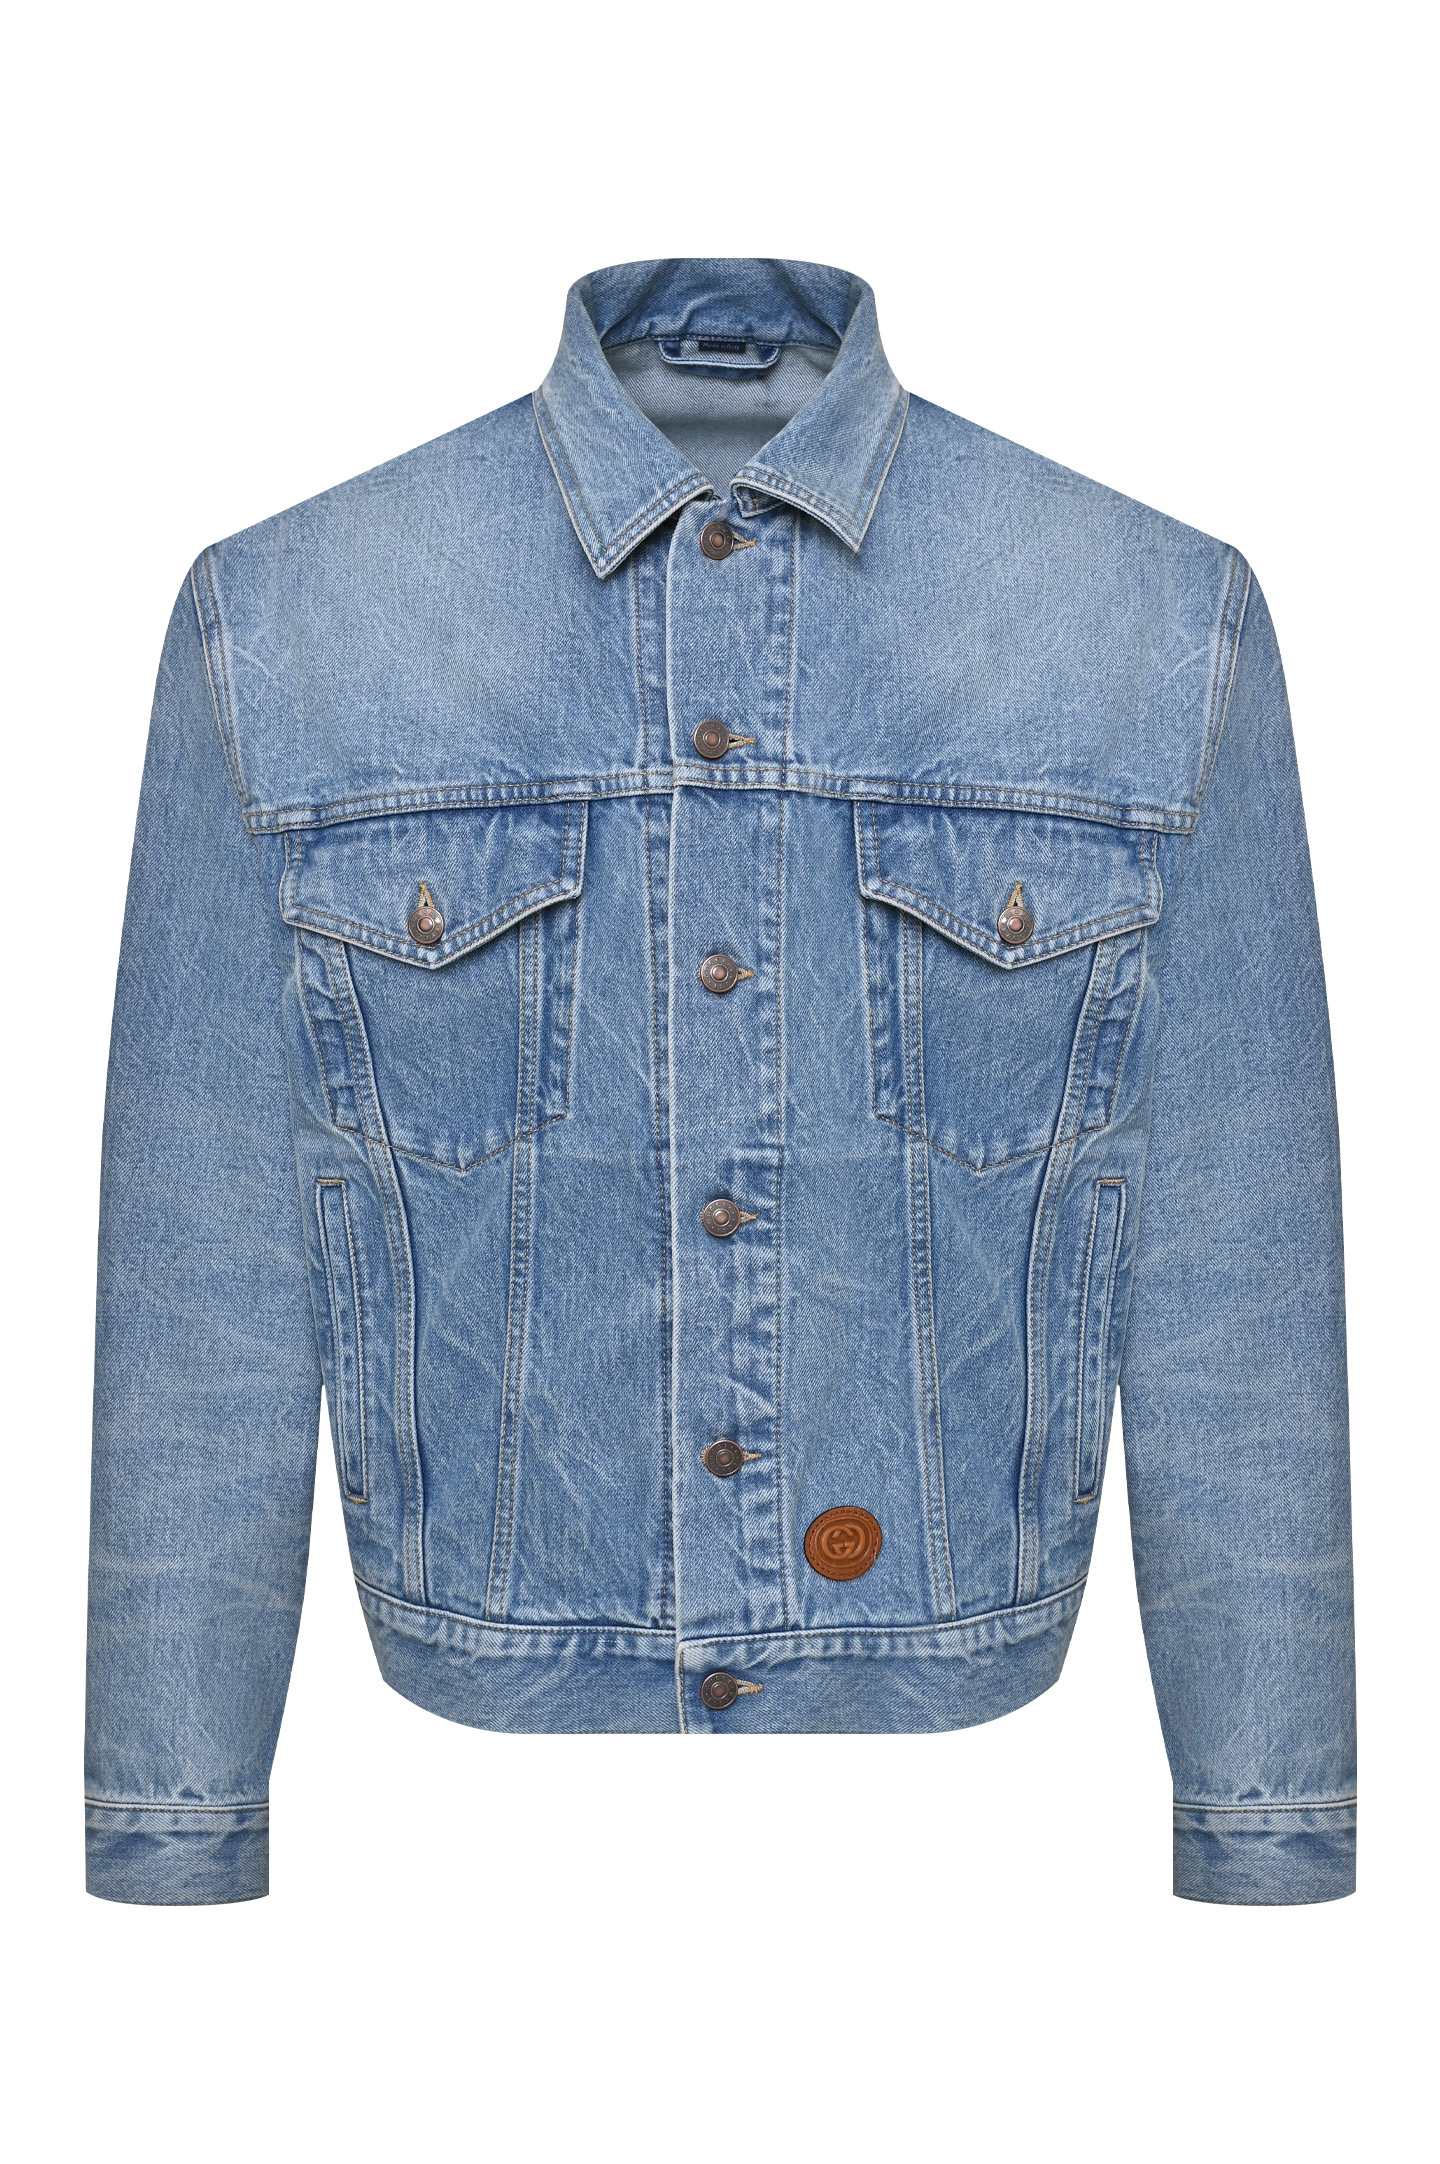 Куртка GUCCI 594850 XDBK0, цвет: Голубой, Мужской